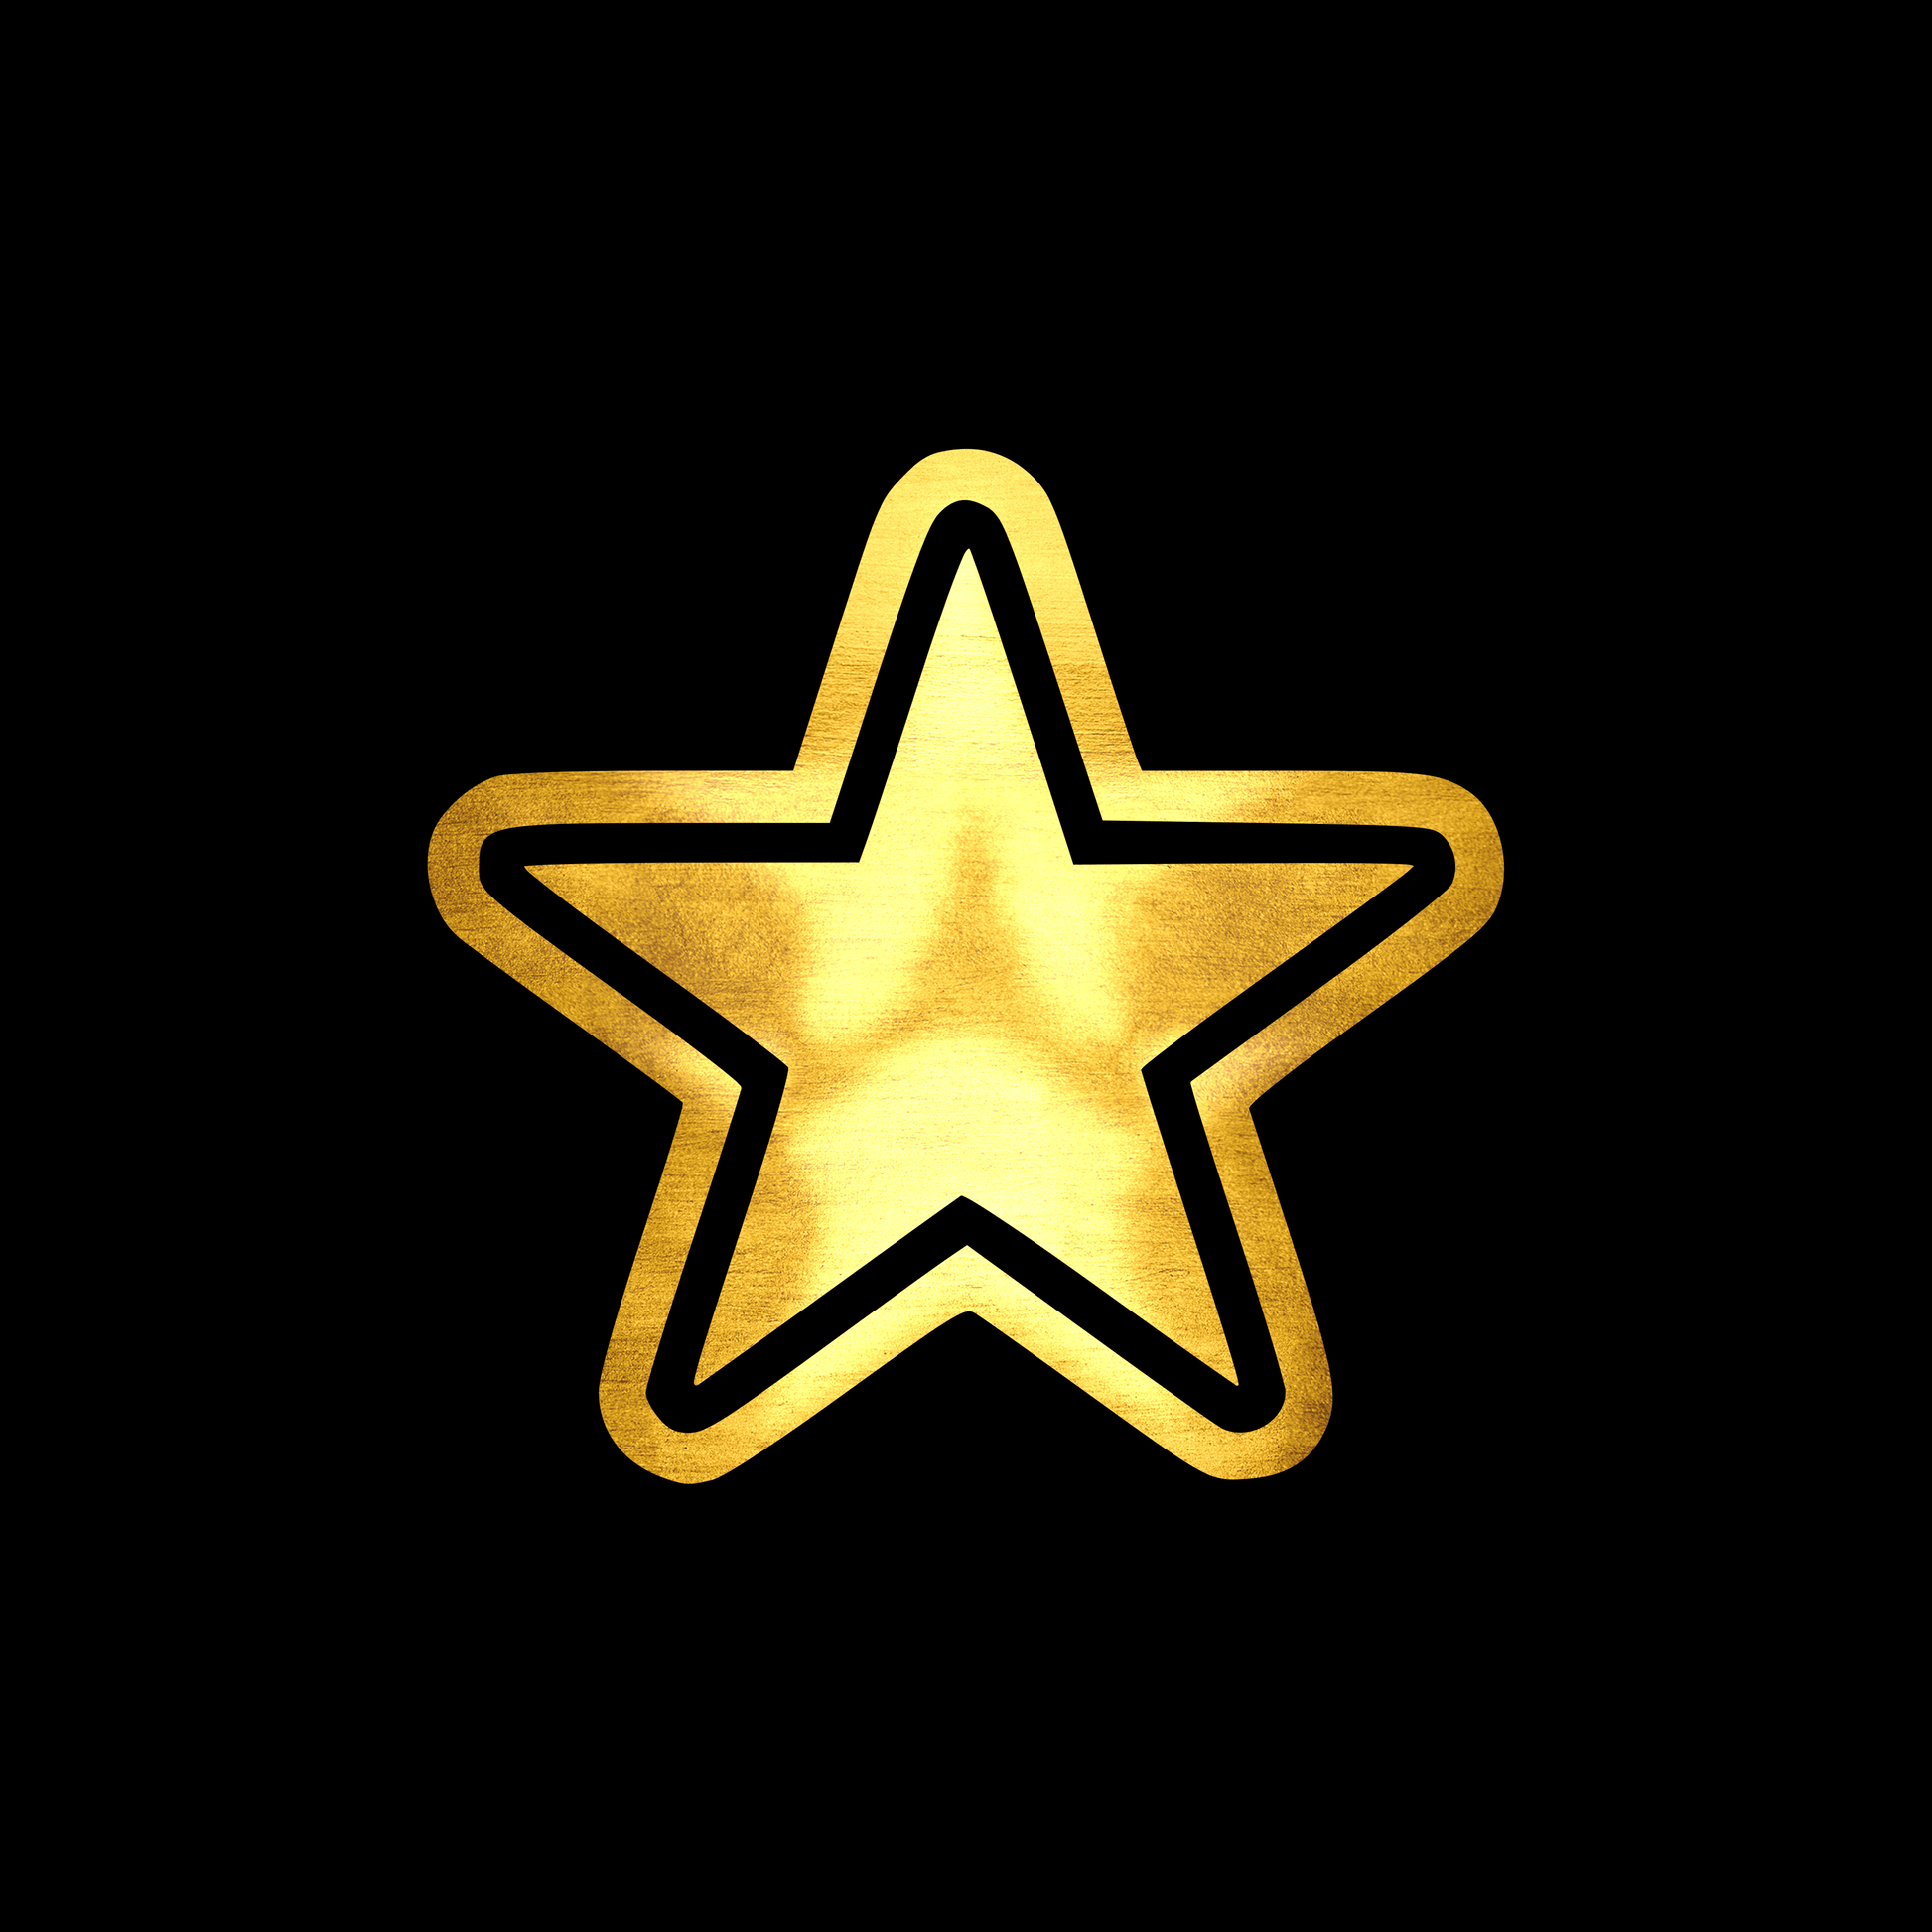 Star 2 sticker decal